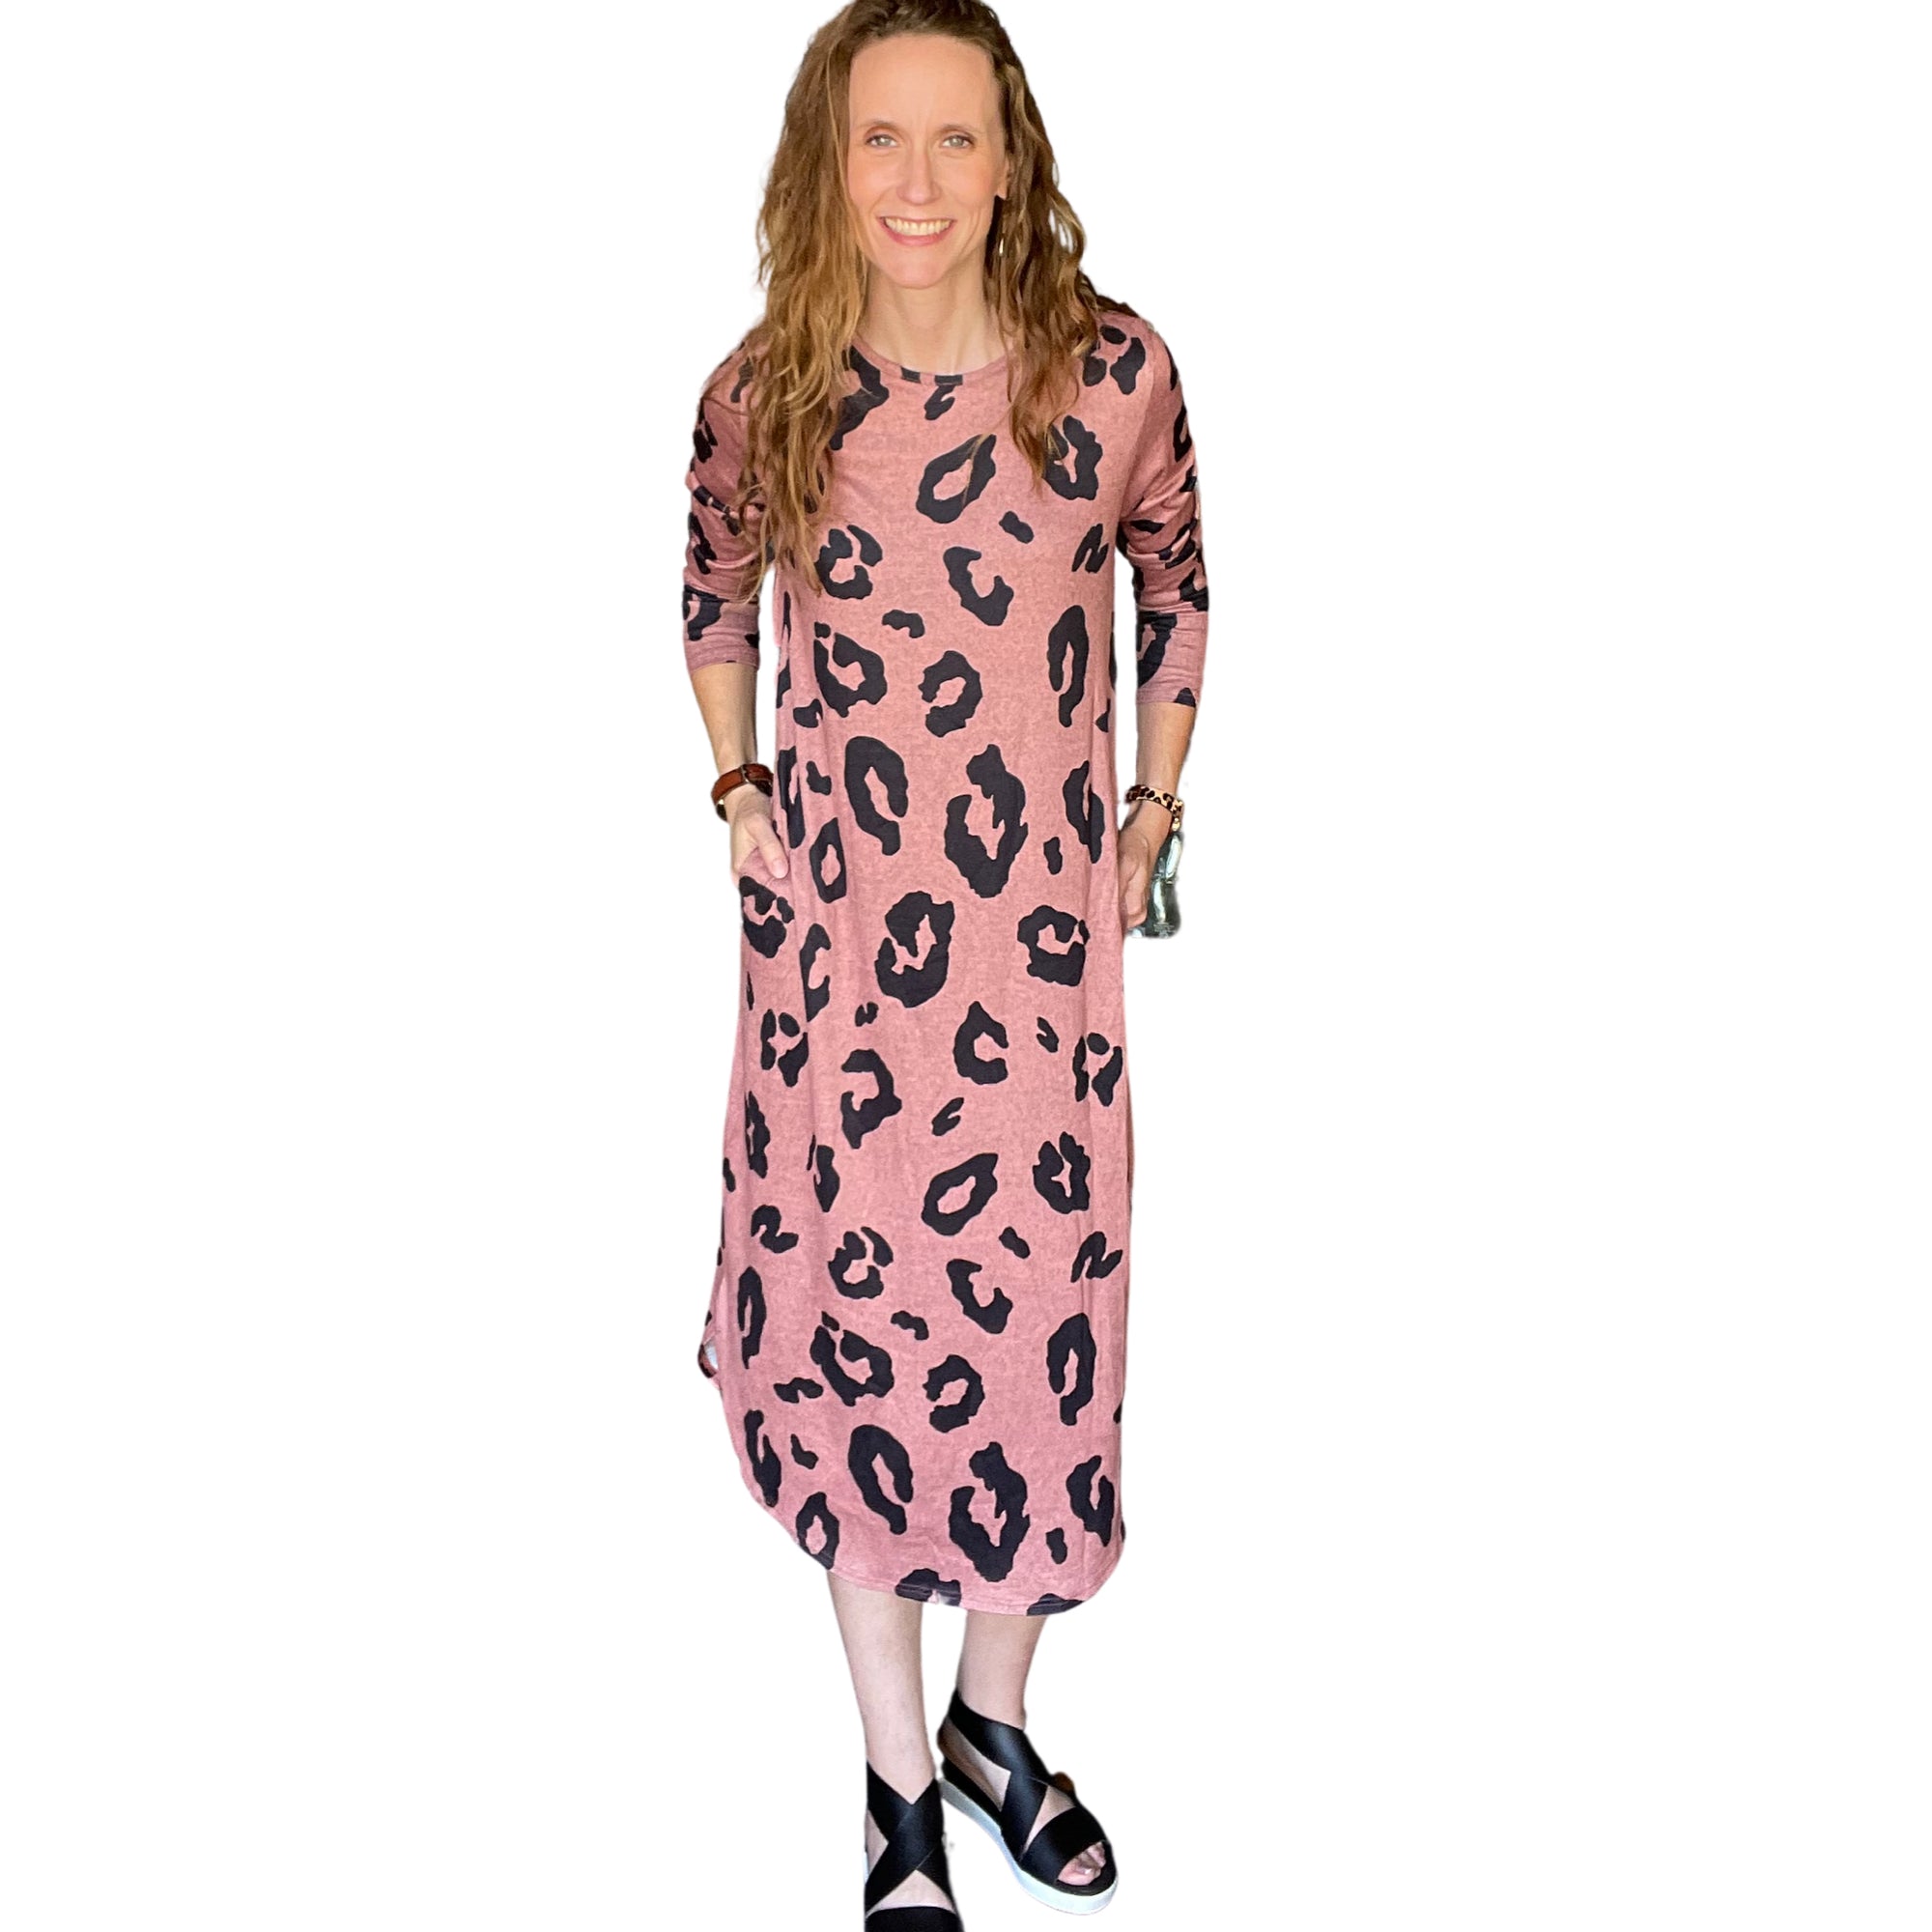 PLUS/REG Fall in Leopard Midi Dress